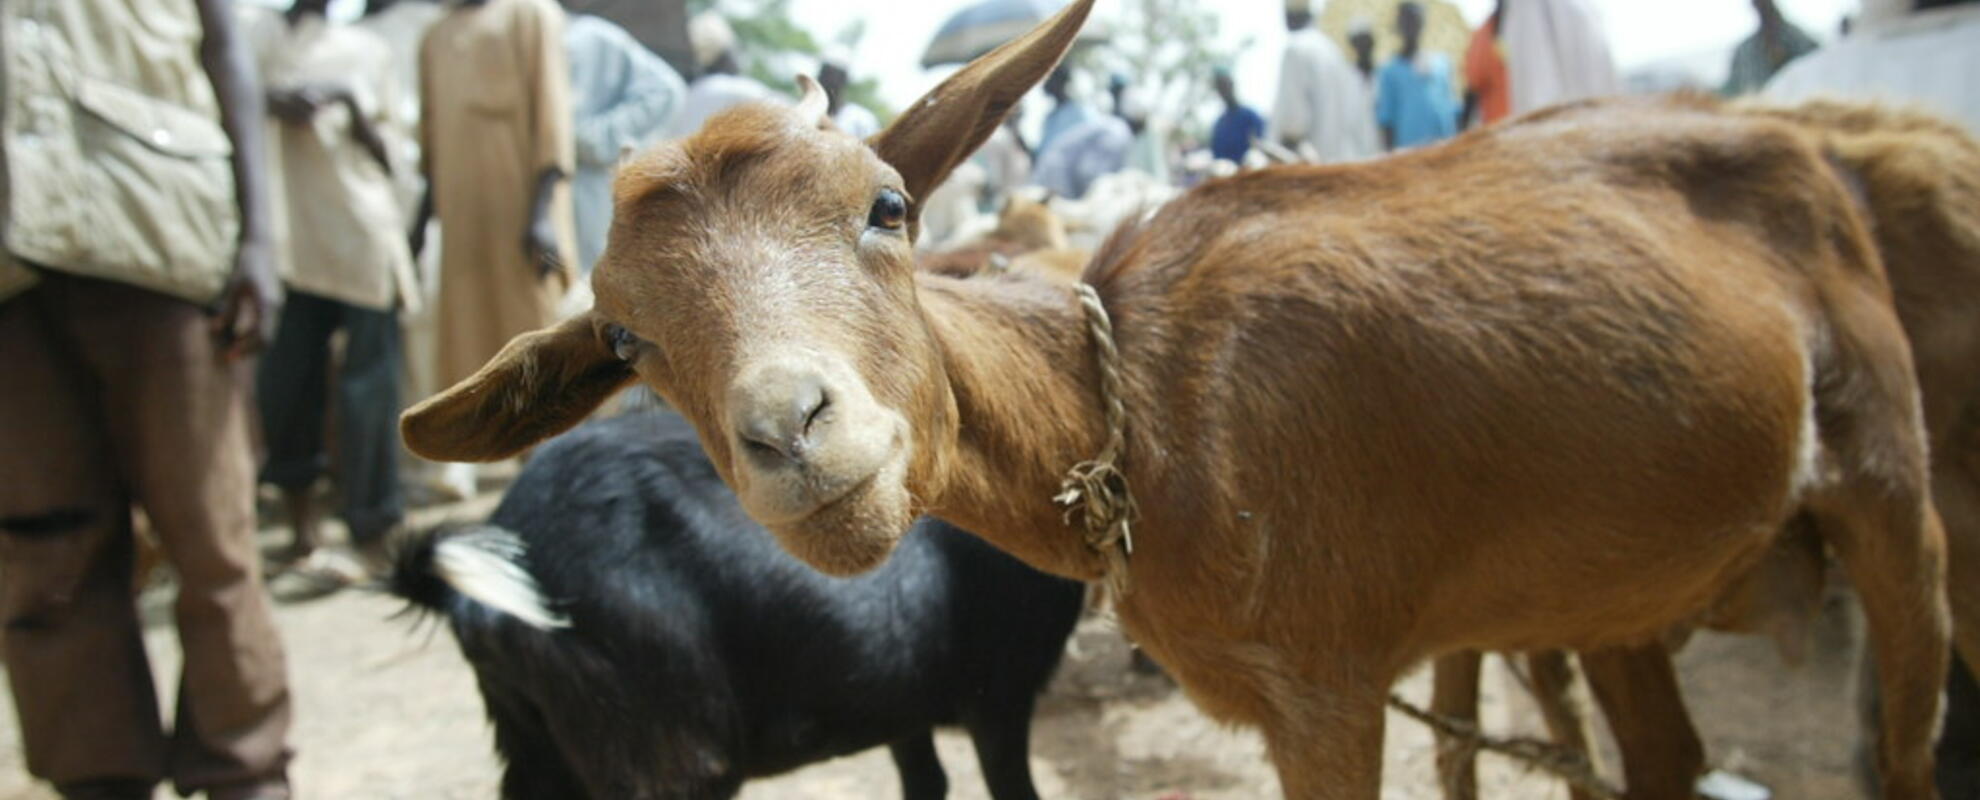 Goat in a market in Nigeria